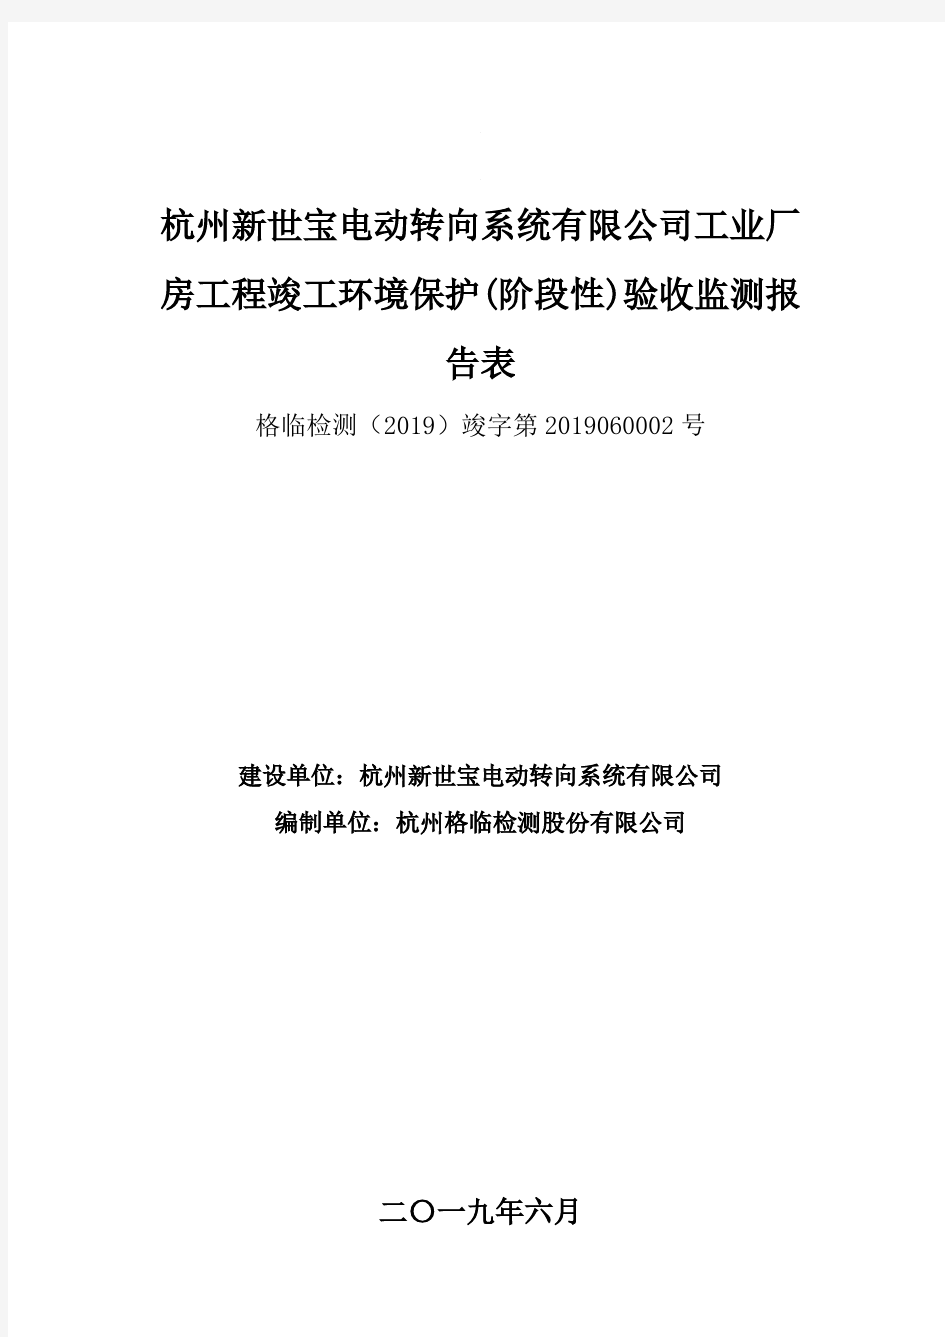 杭州新世宝电动转向系统有限公司工业厂.pdf